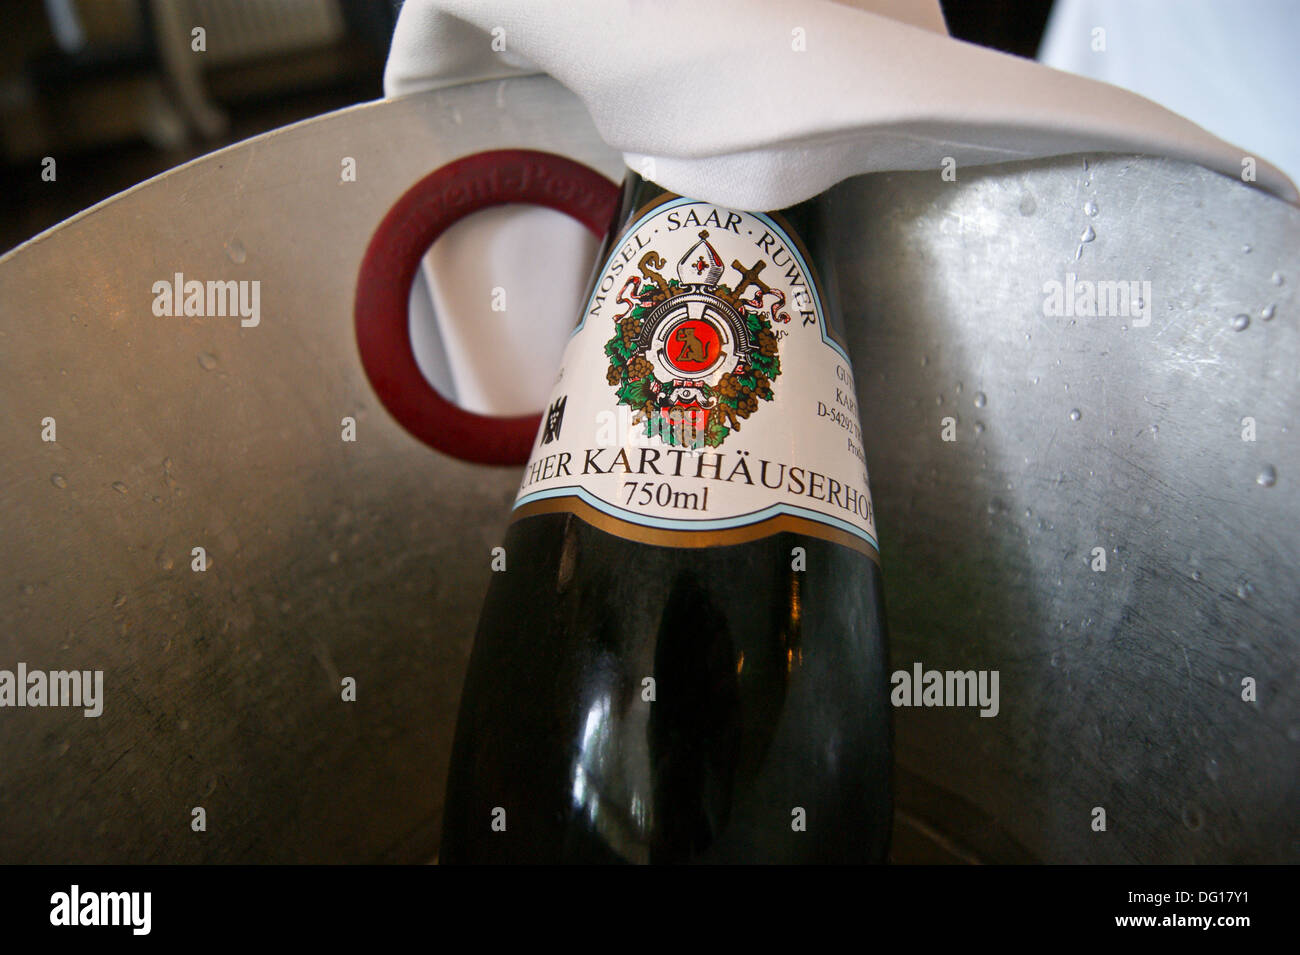 Une bouteille de Riesling Eitelsbacher Karthauserhofberg de vin de la région Mosel-Saar-Ruwer dans un seau à glace Banque D'Images